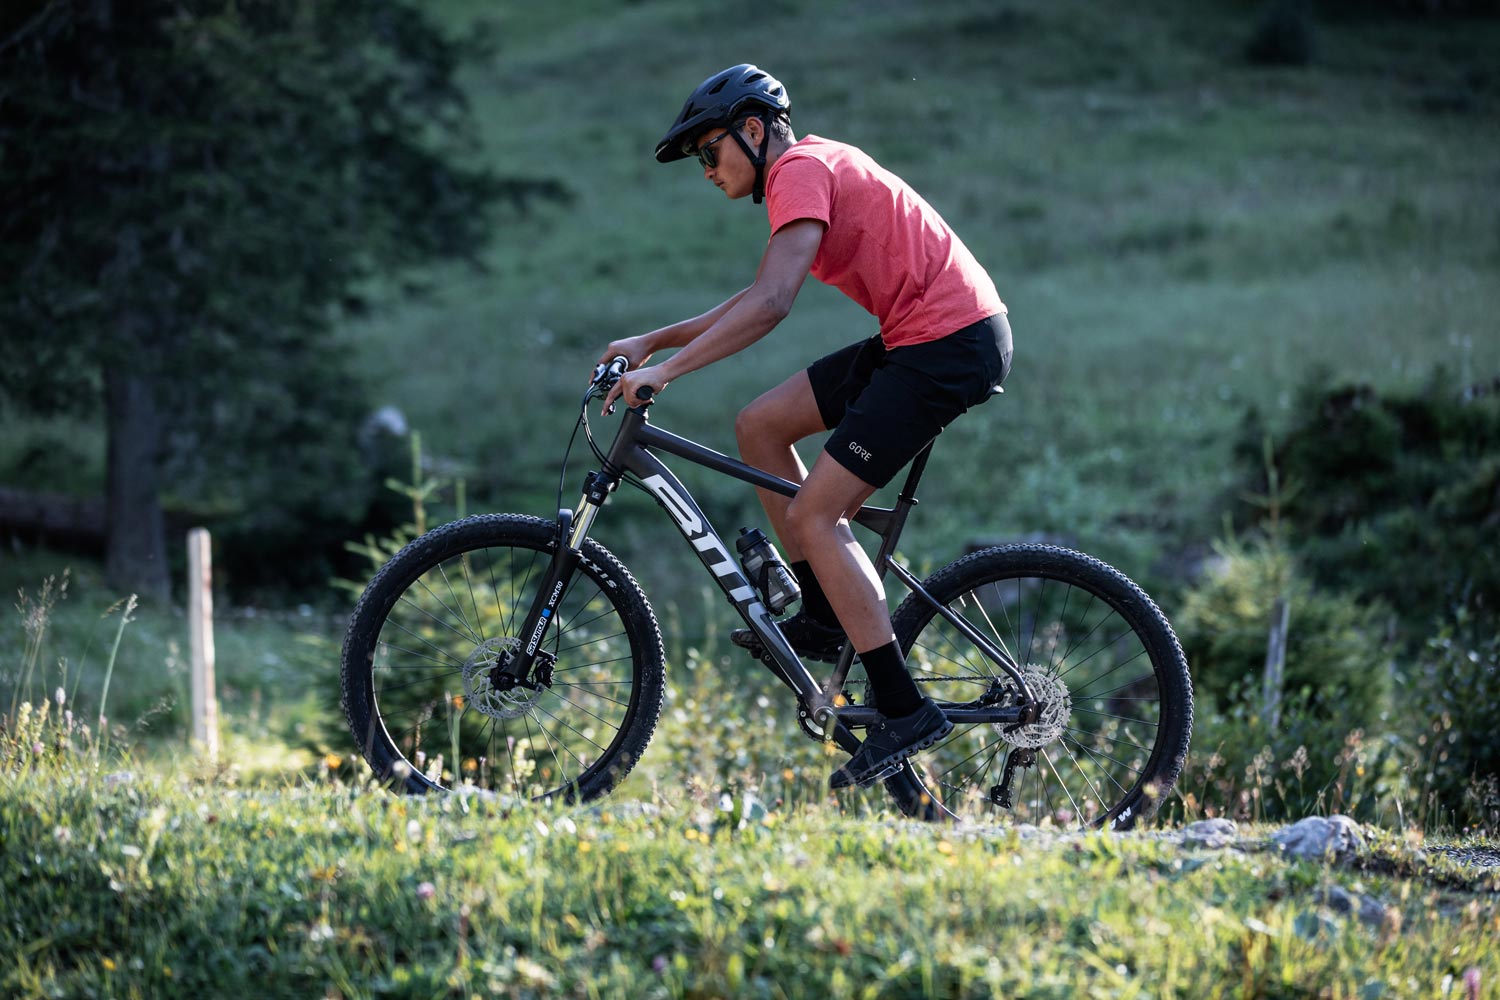 Mountainbike kopen die aan jouw | Iron Bikes te Rumst